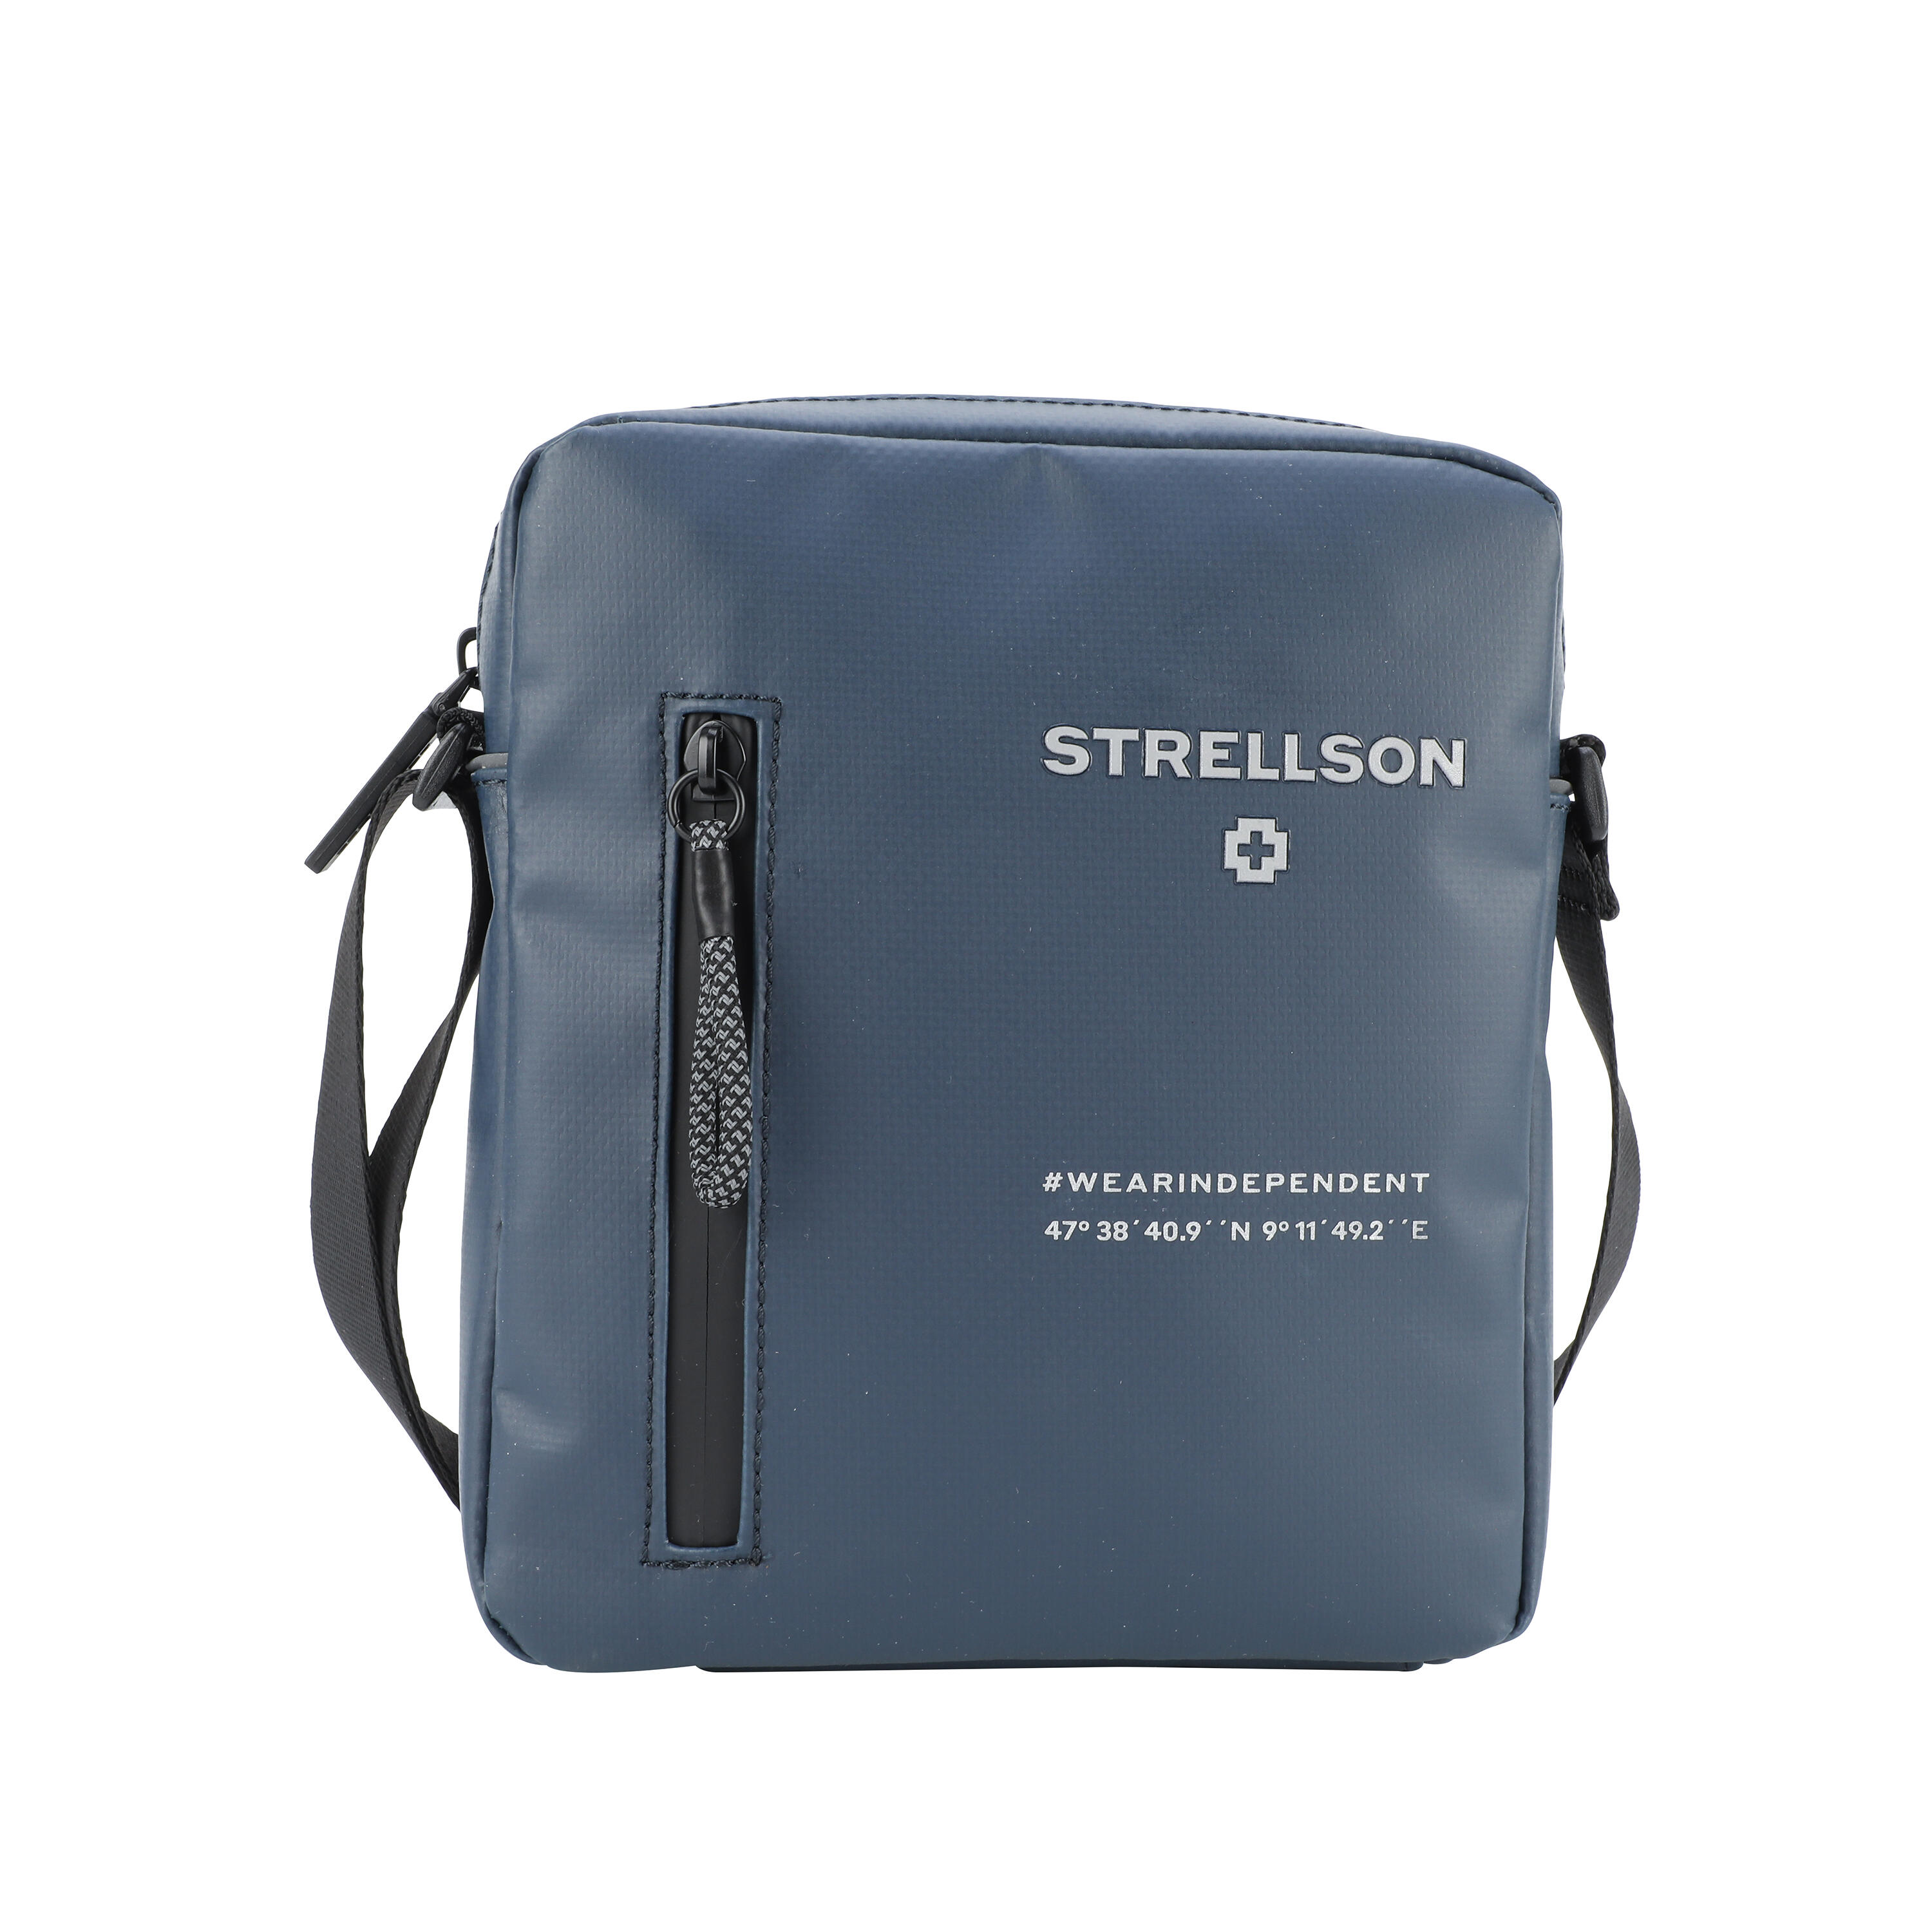 Strellson men bags & small Xsvz 2.0 Küper leather Shoulderbag Marcus | Lederwaren Stockwell goods